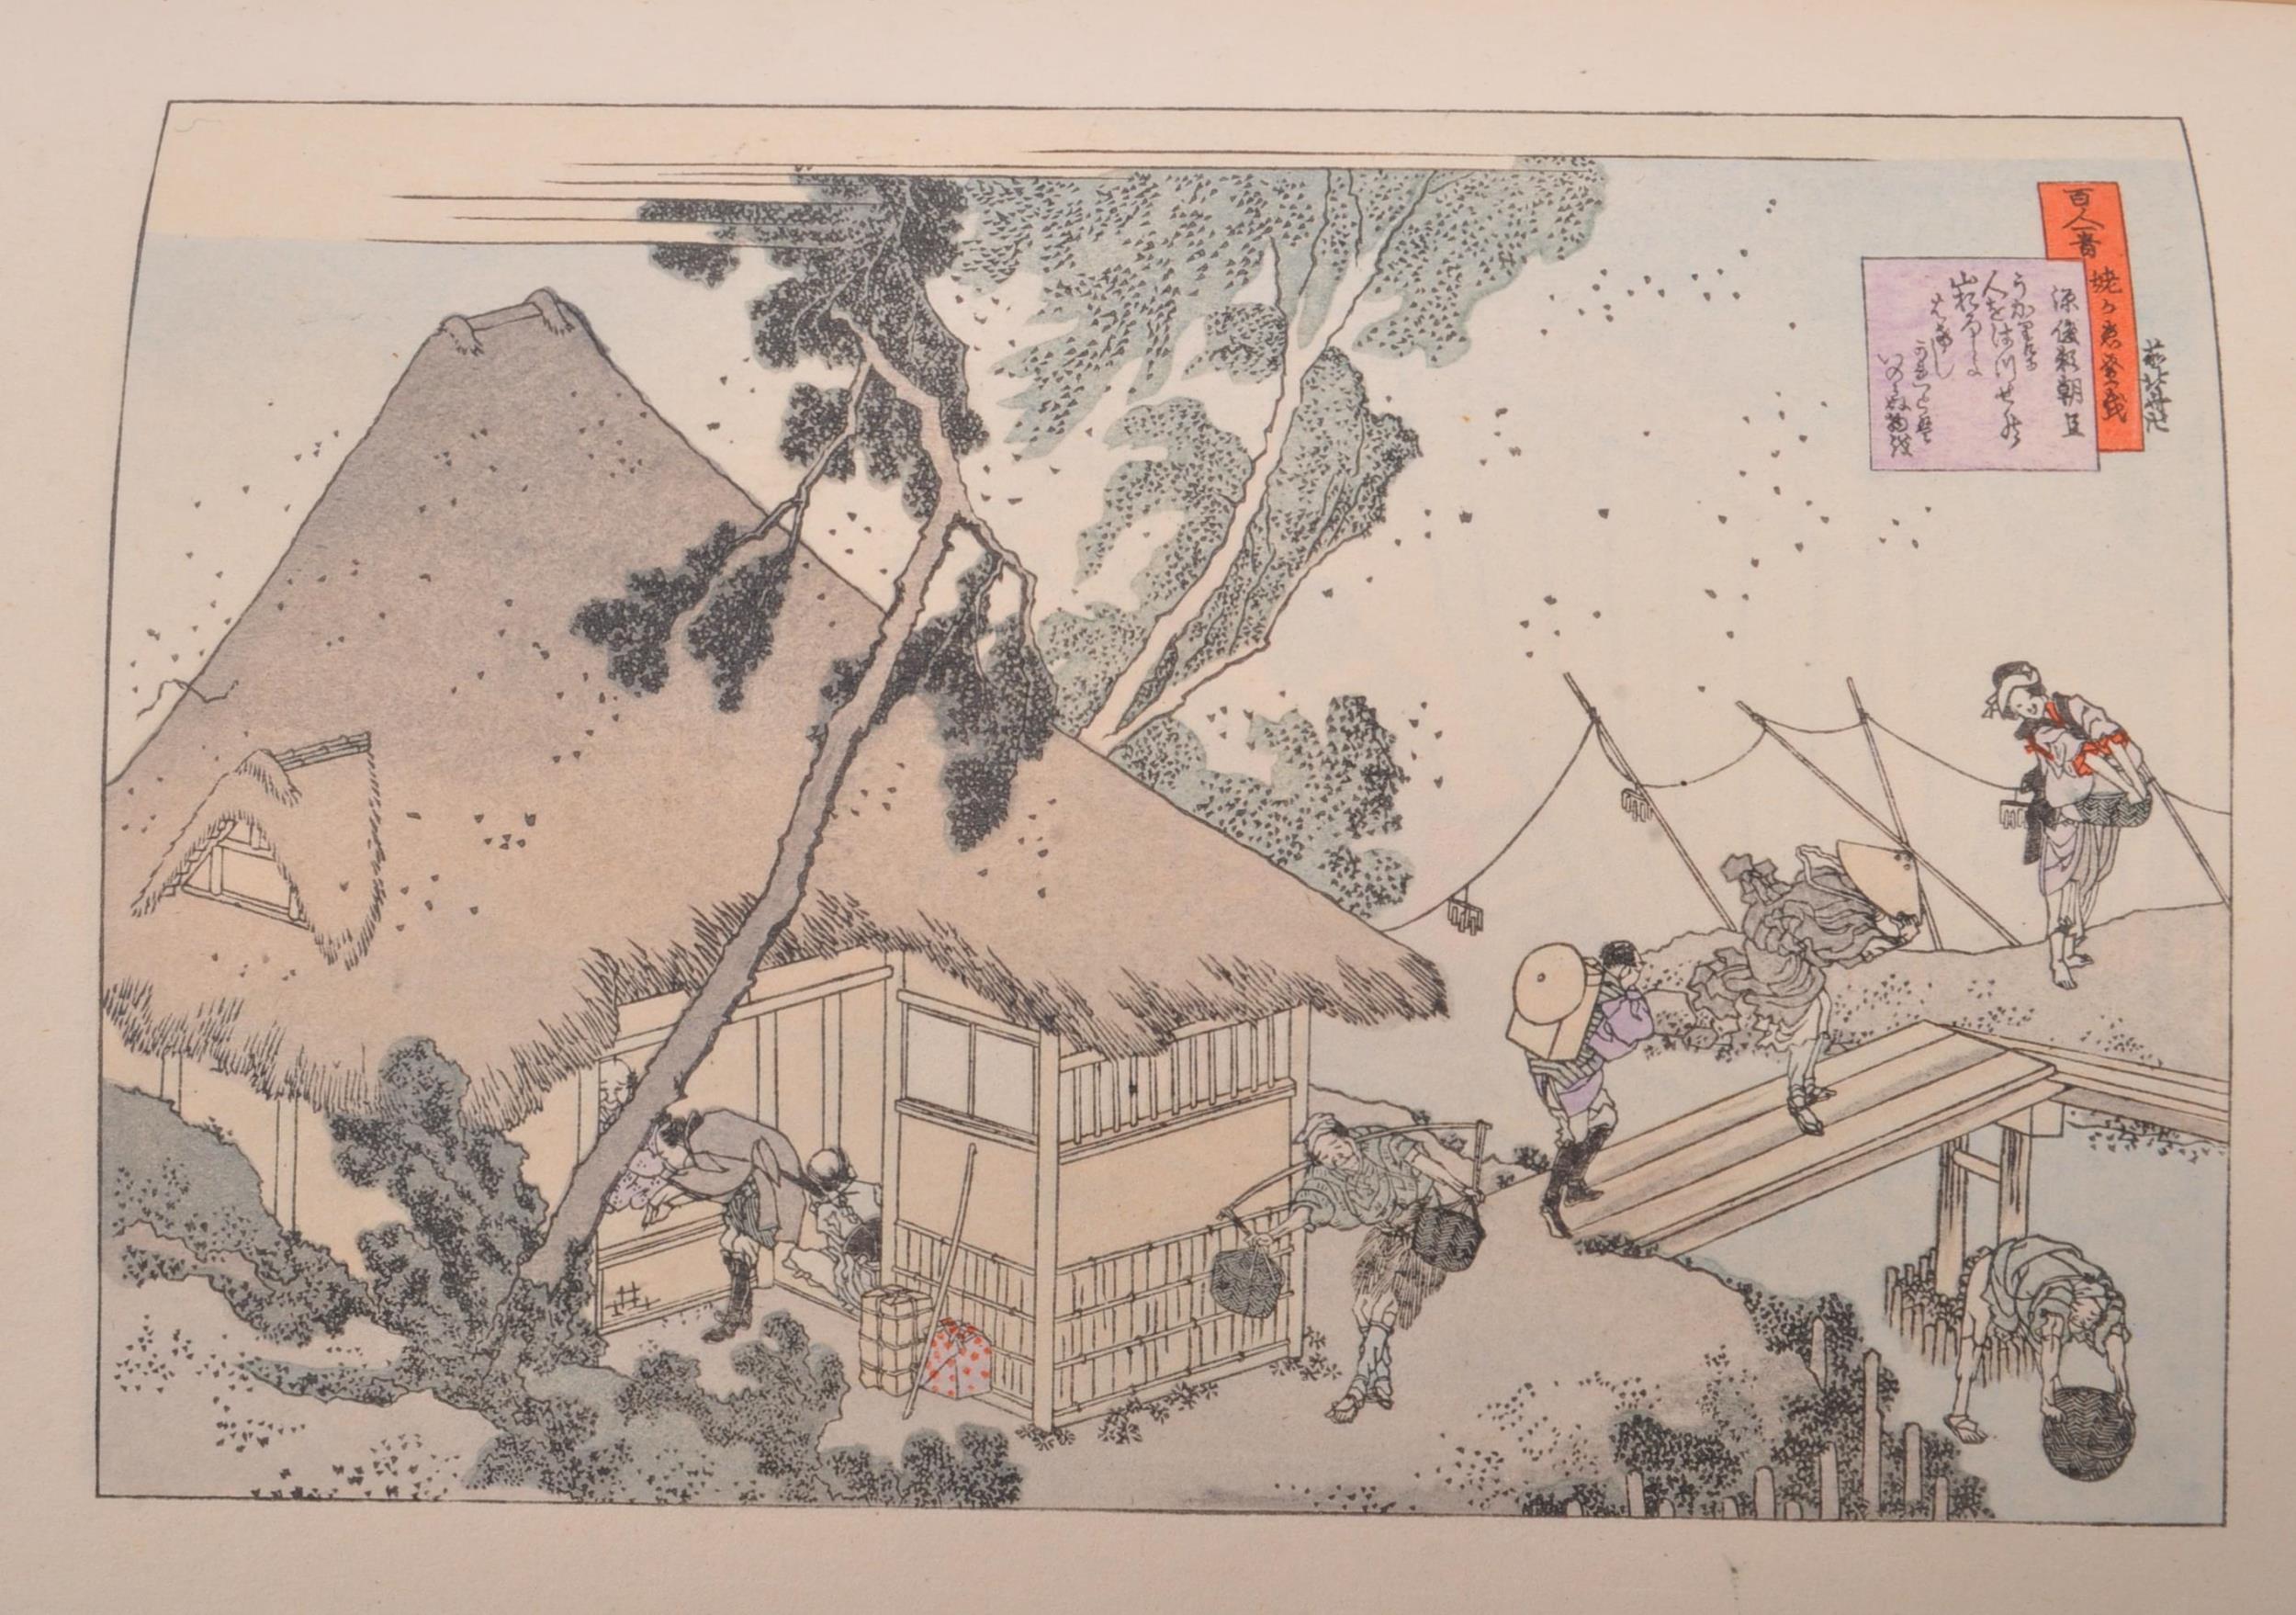 HOKUSAI MASTER OF THE JAPANESE UKIYO-YE SCHOOL OF PAINTING - Image 4 of 7